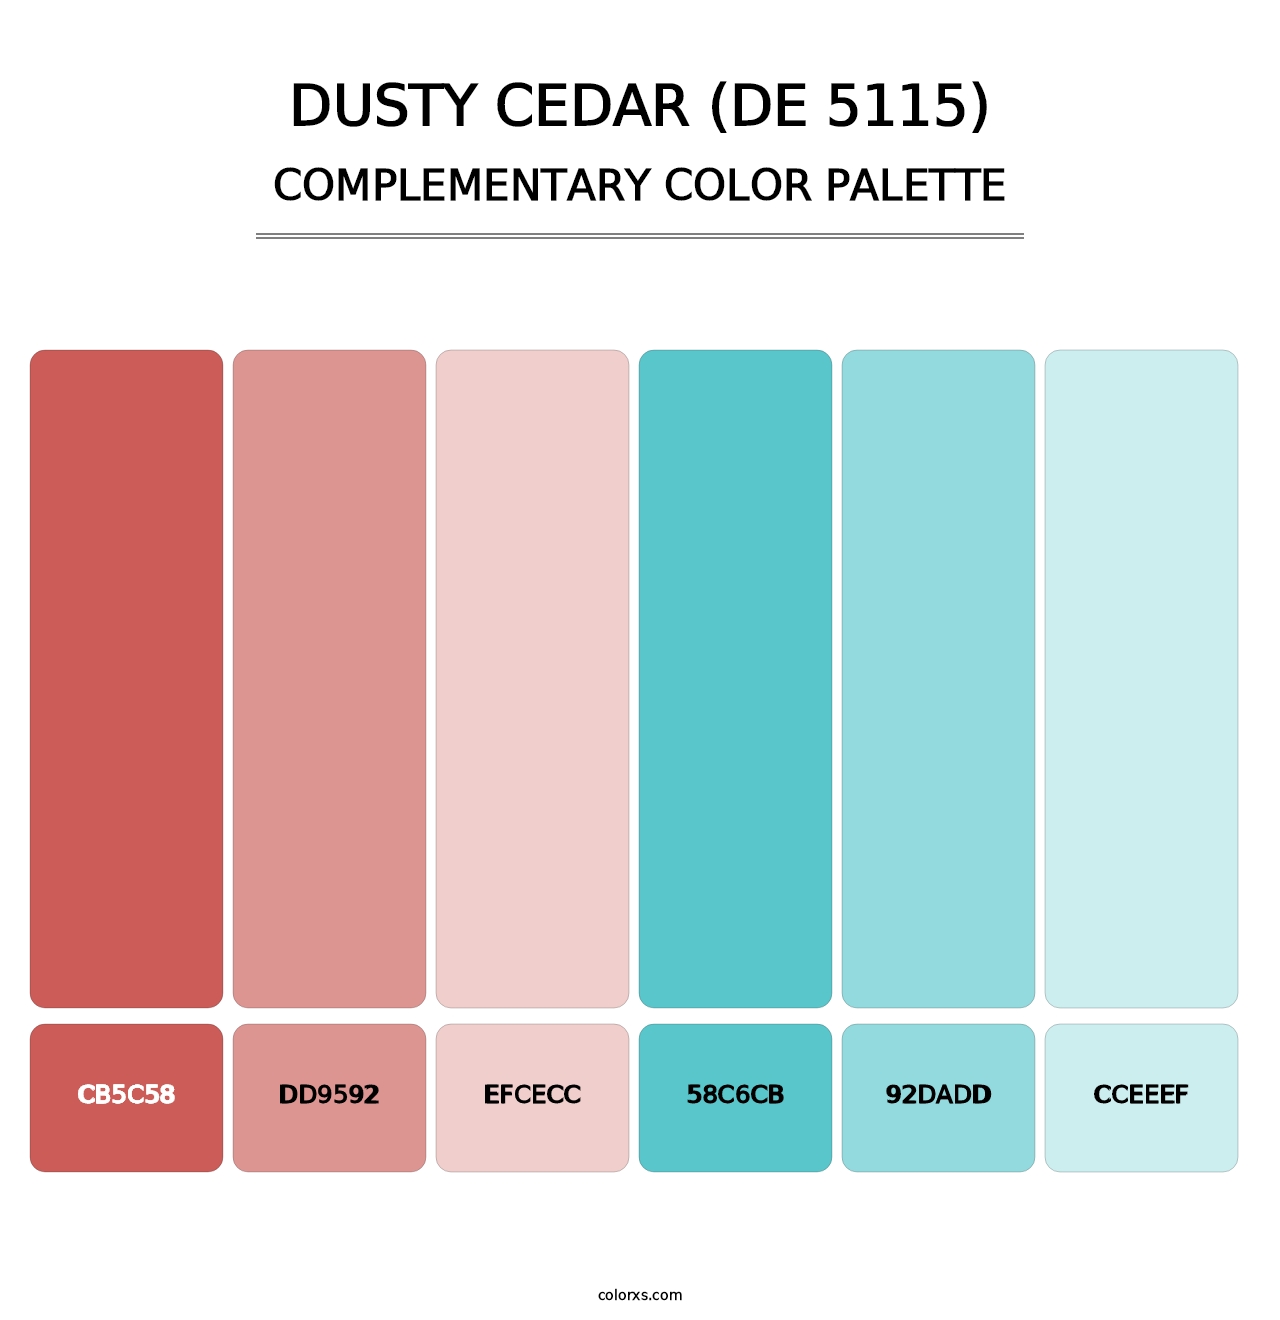 Dusty Cedar (DE 5115) - Complementary Color Palette